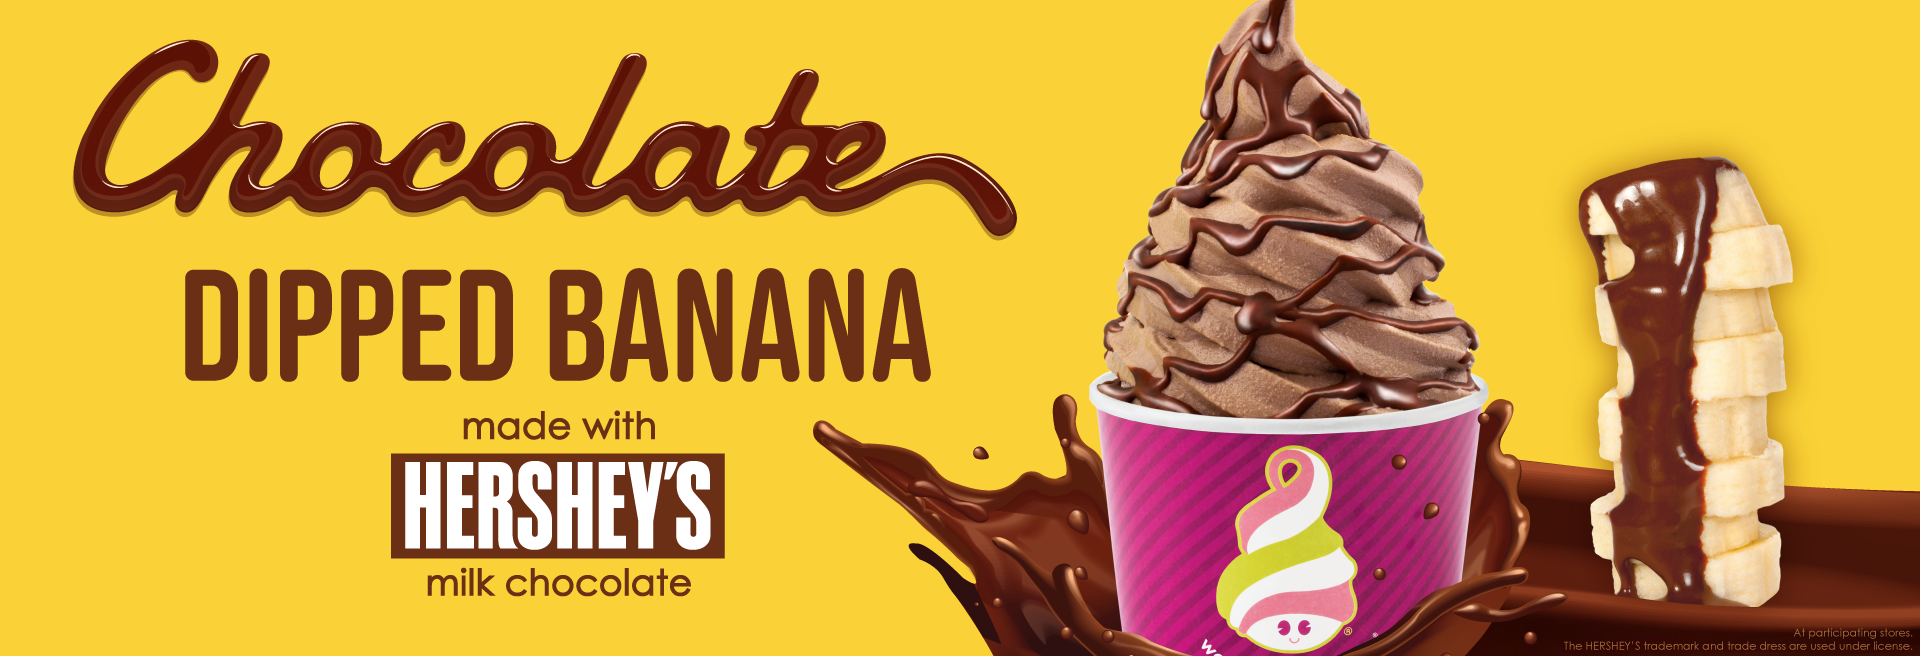 Banana + Chocolate Ice Cream = YUM!